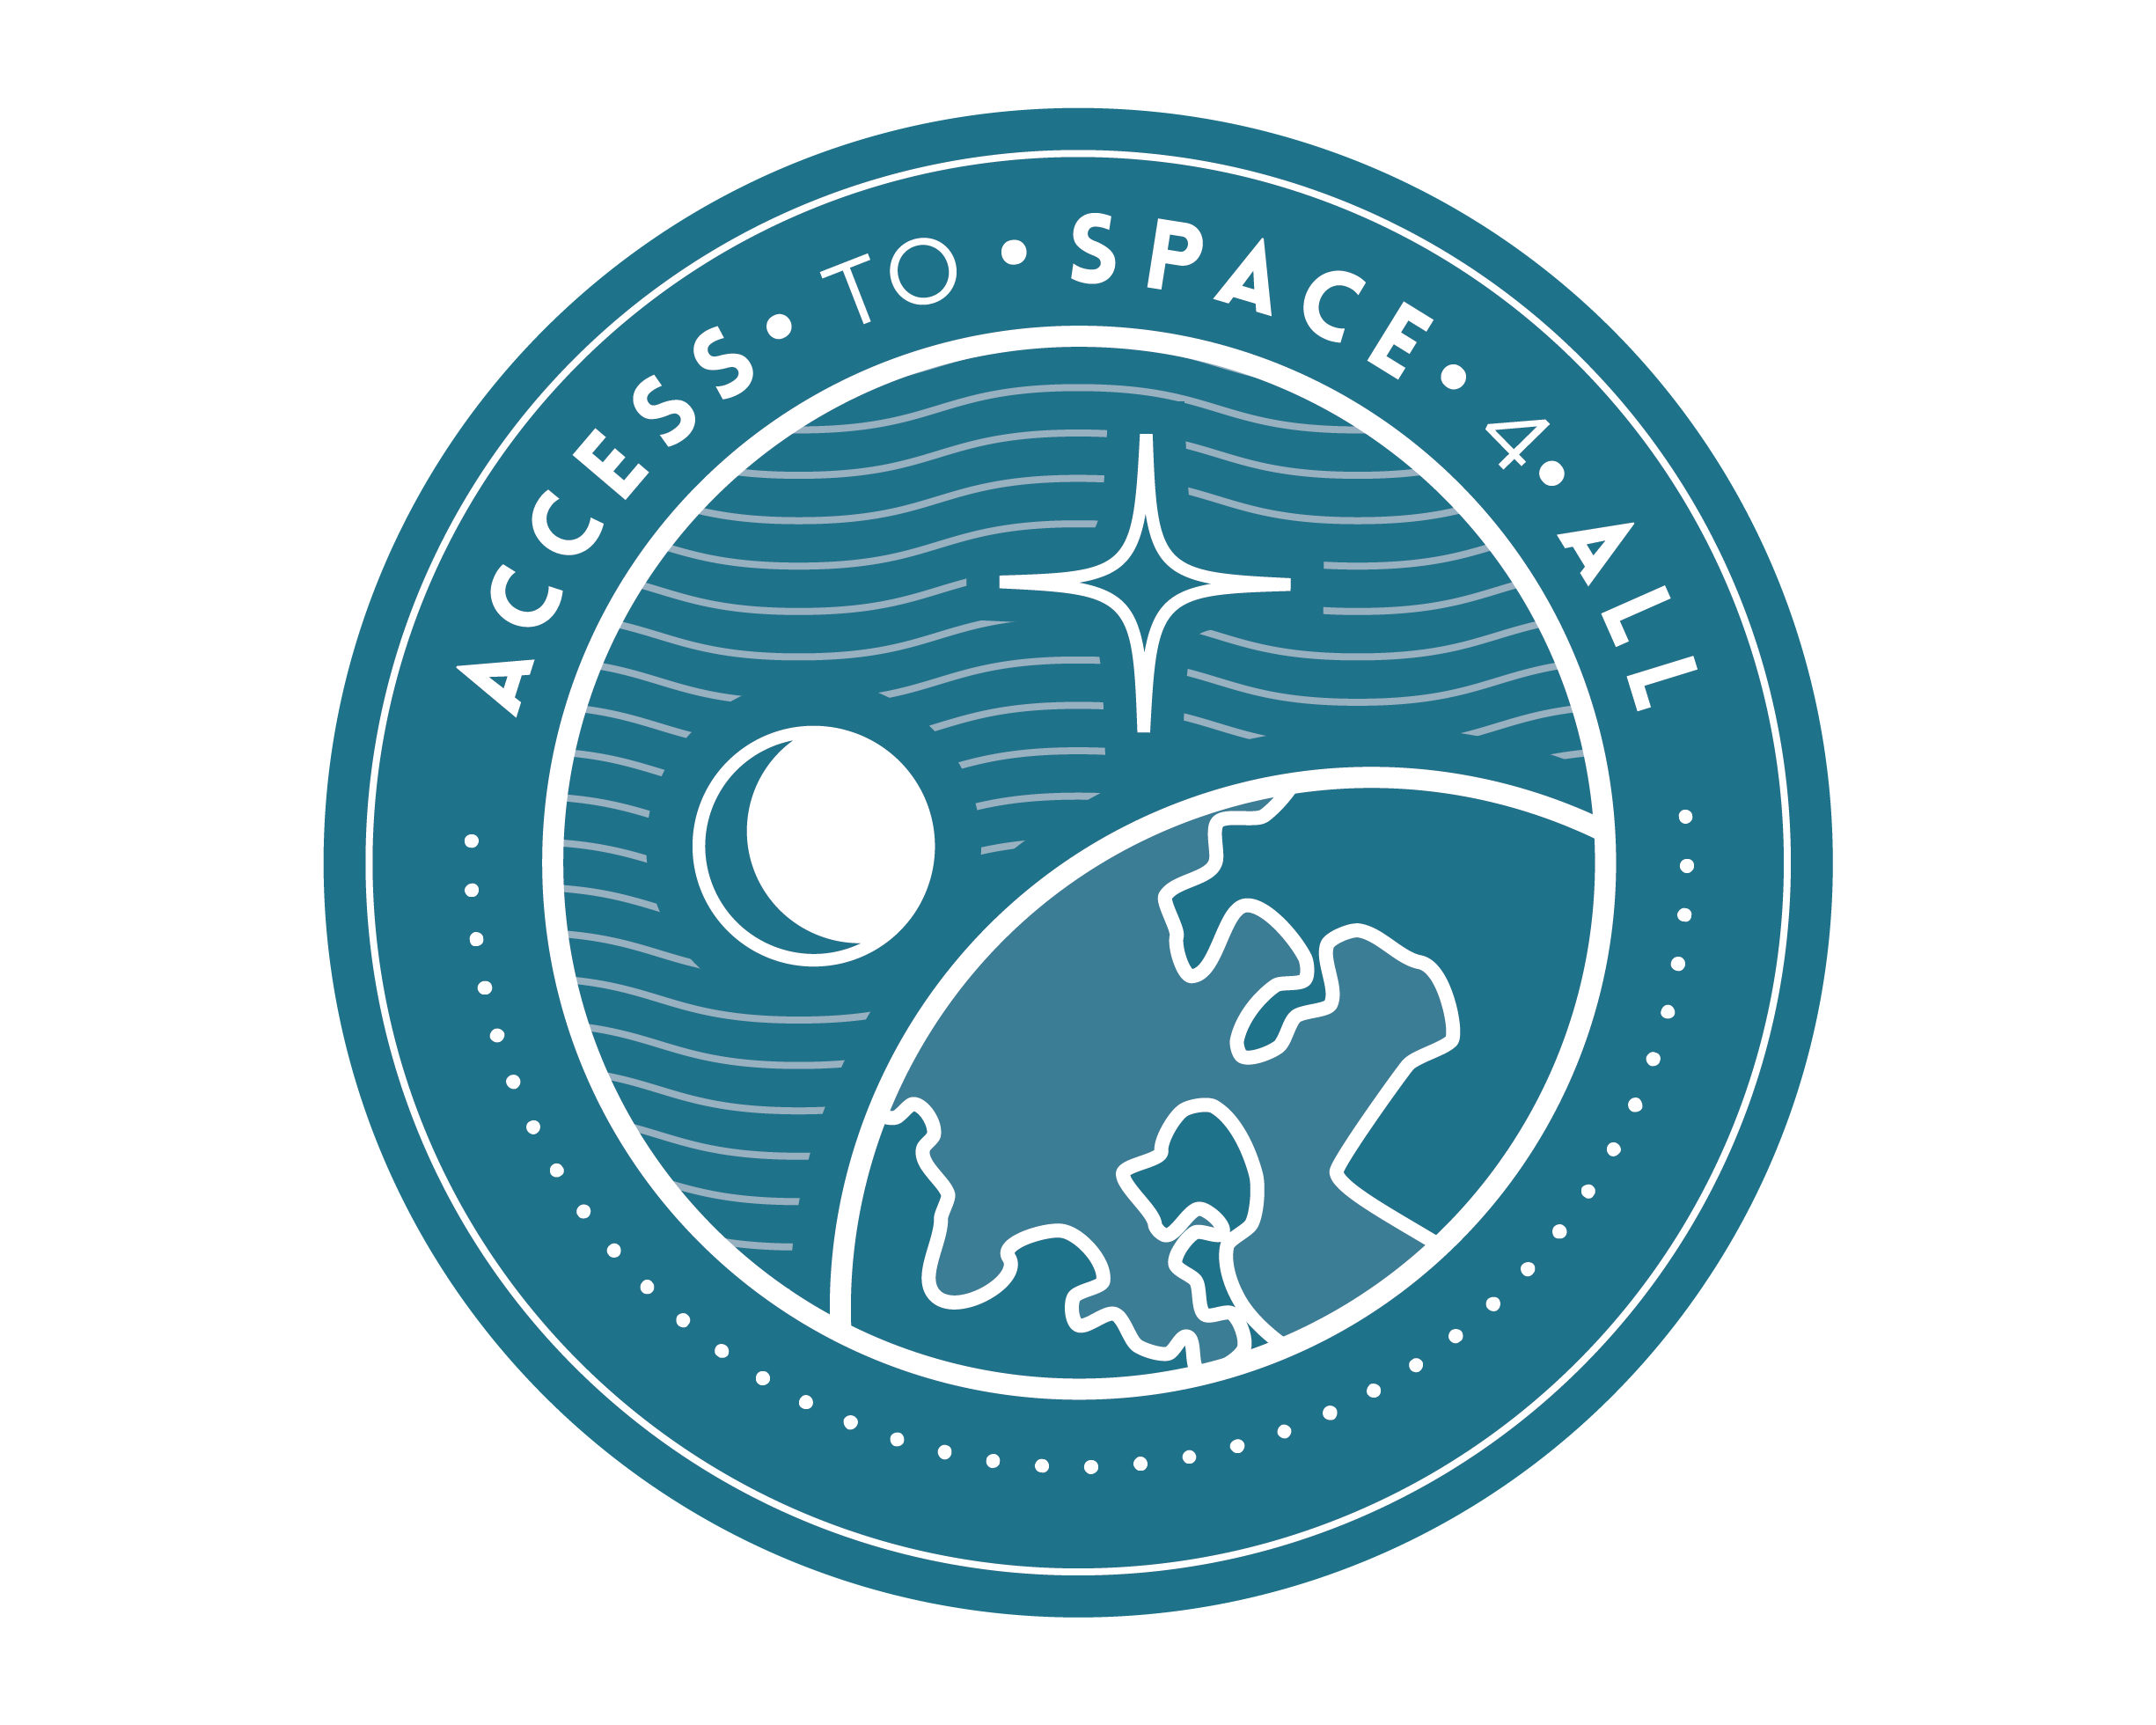 مبادرة الوصول للفضاء كجزء من برنامج زمالة الأمم المتحدة  ووكالة الفضاء الأوروبية 